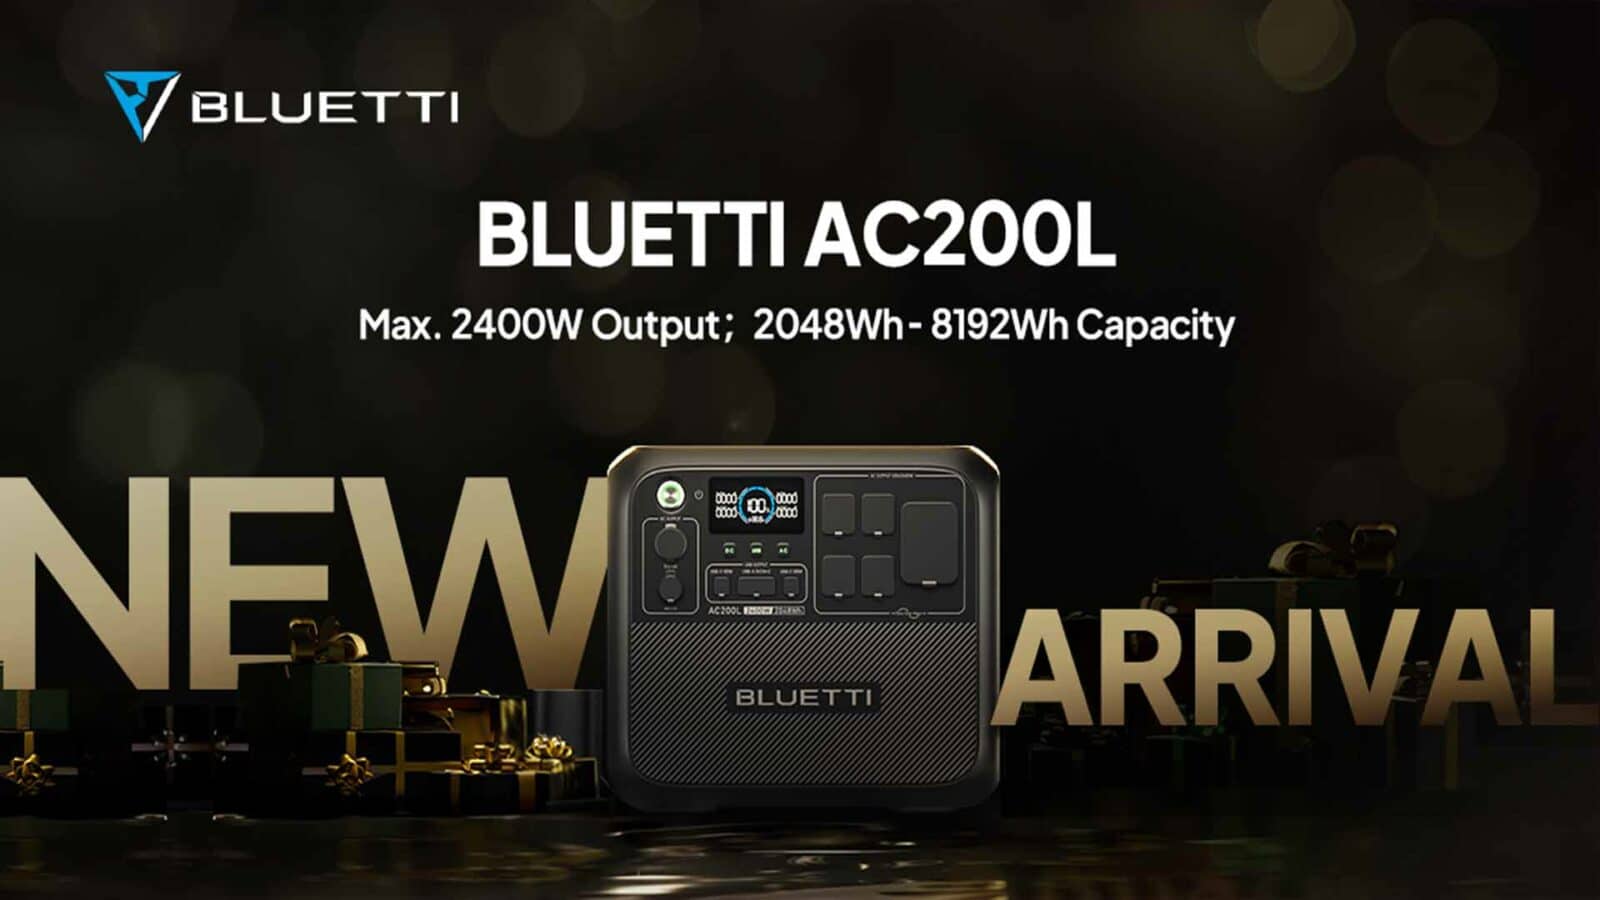 È arrivato un nuovo modello del bluetti ac200l con una potenza massima di 2400w e una capacità di 8192wh.